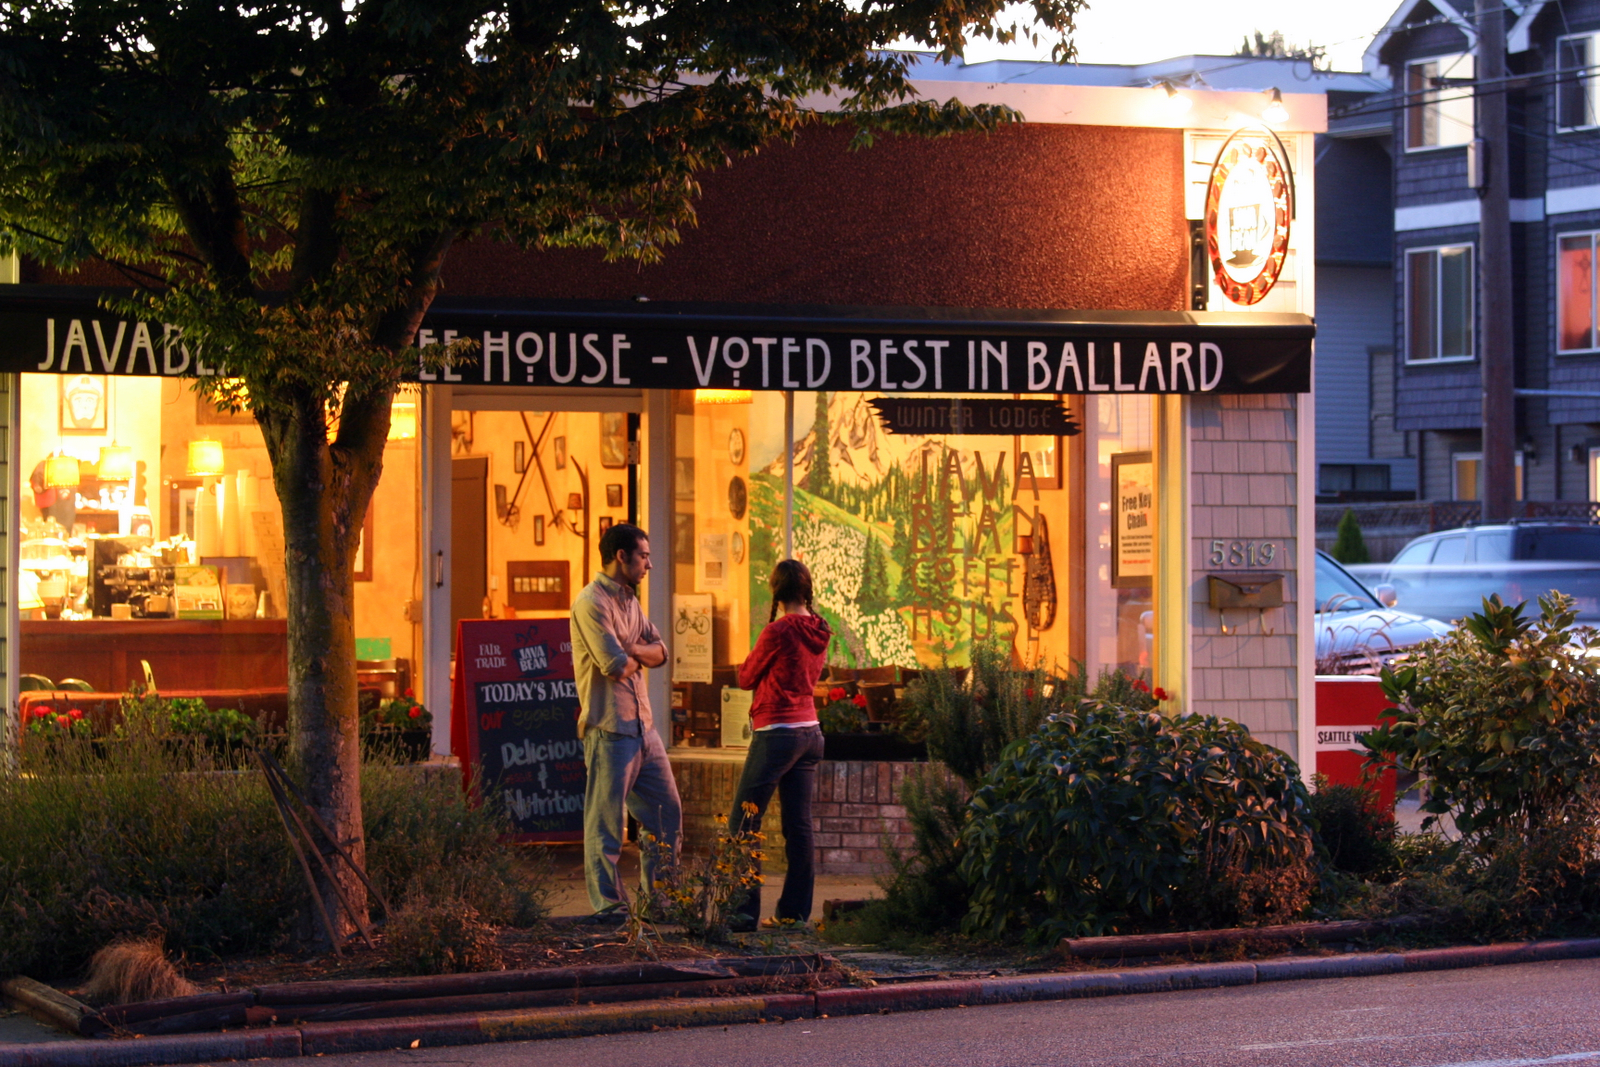 Voted Best in Ballard